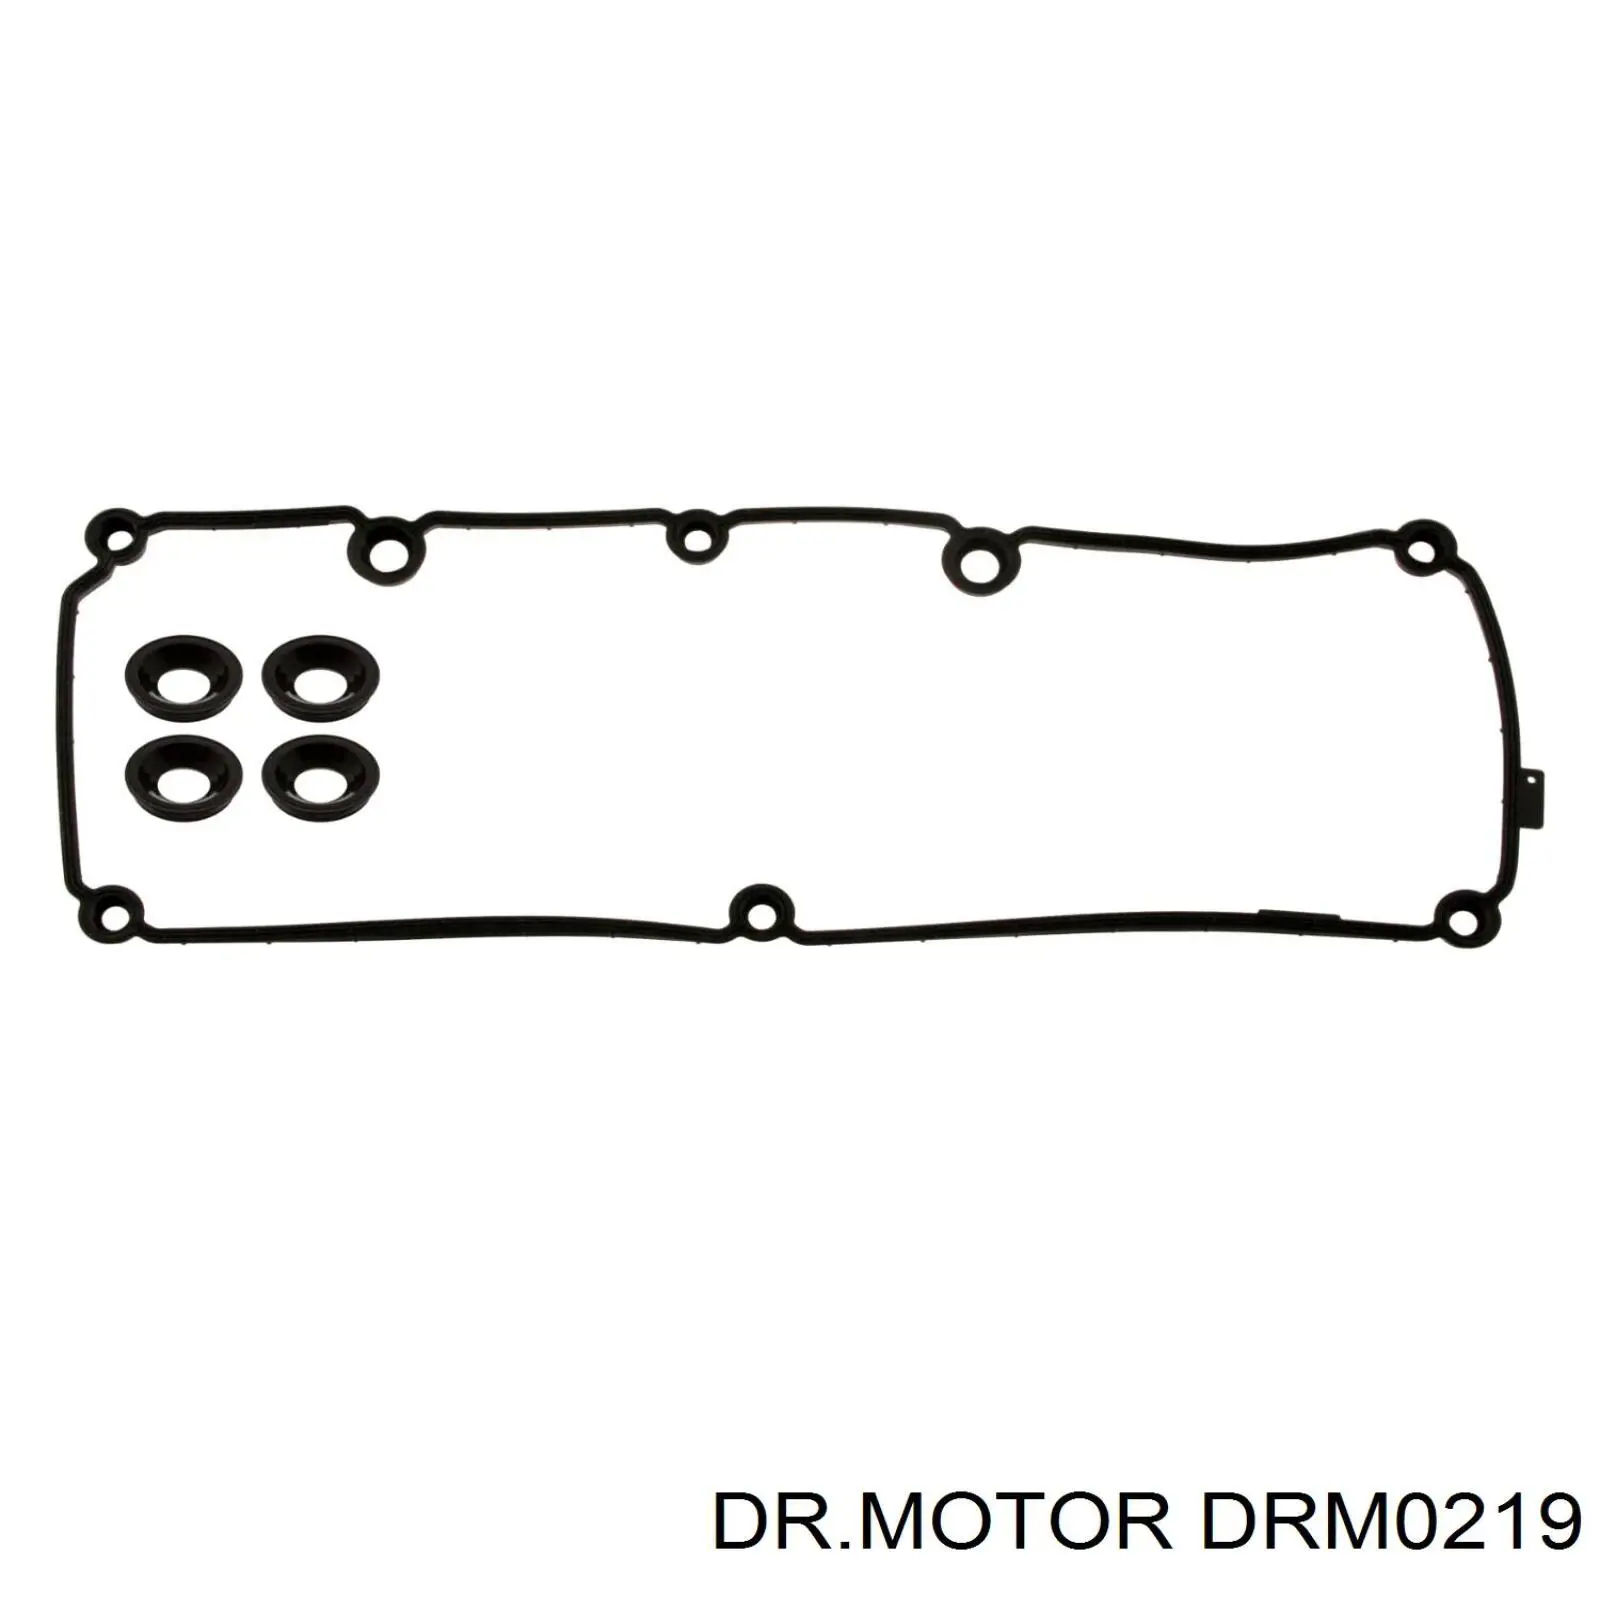 DRM0219 Dr.motor junta anular, cavidad bujía